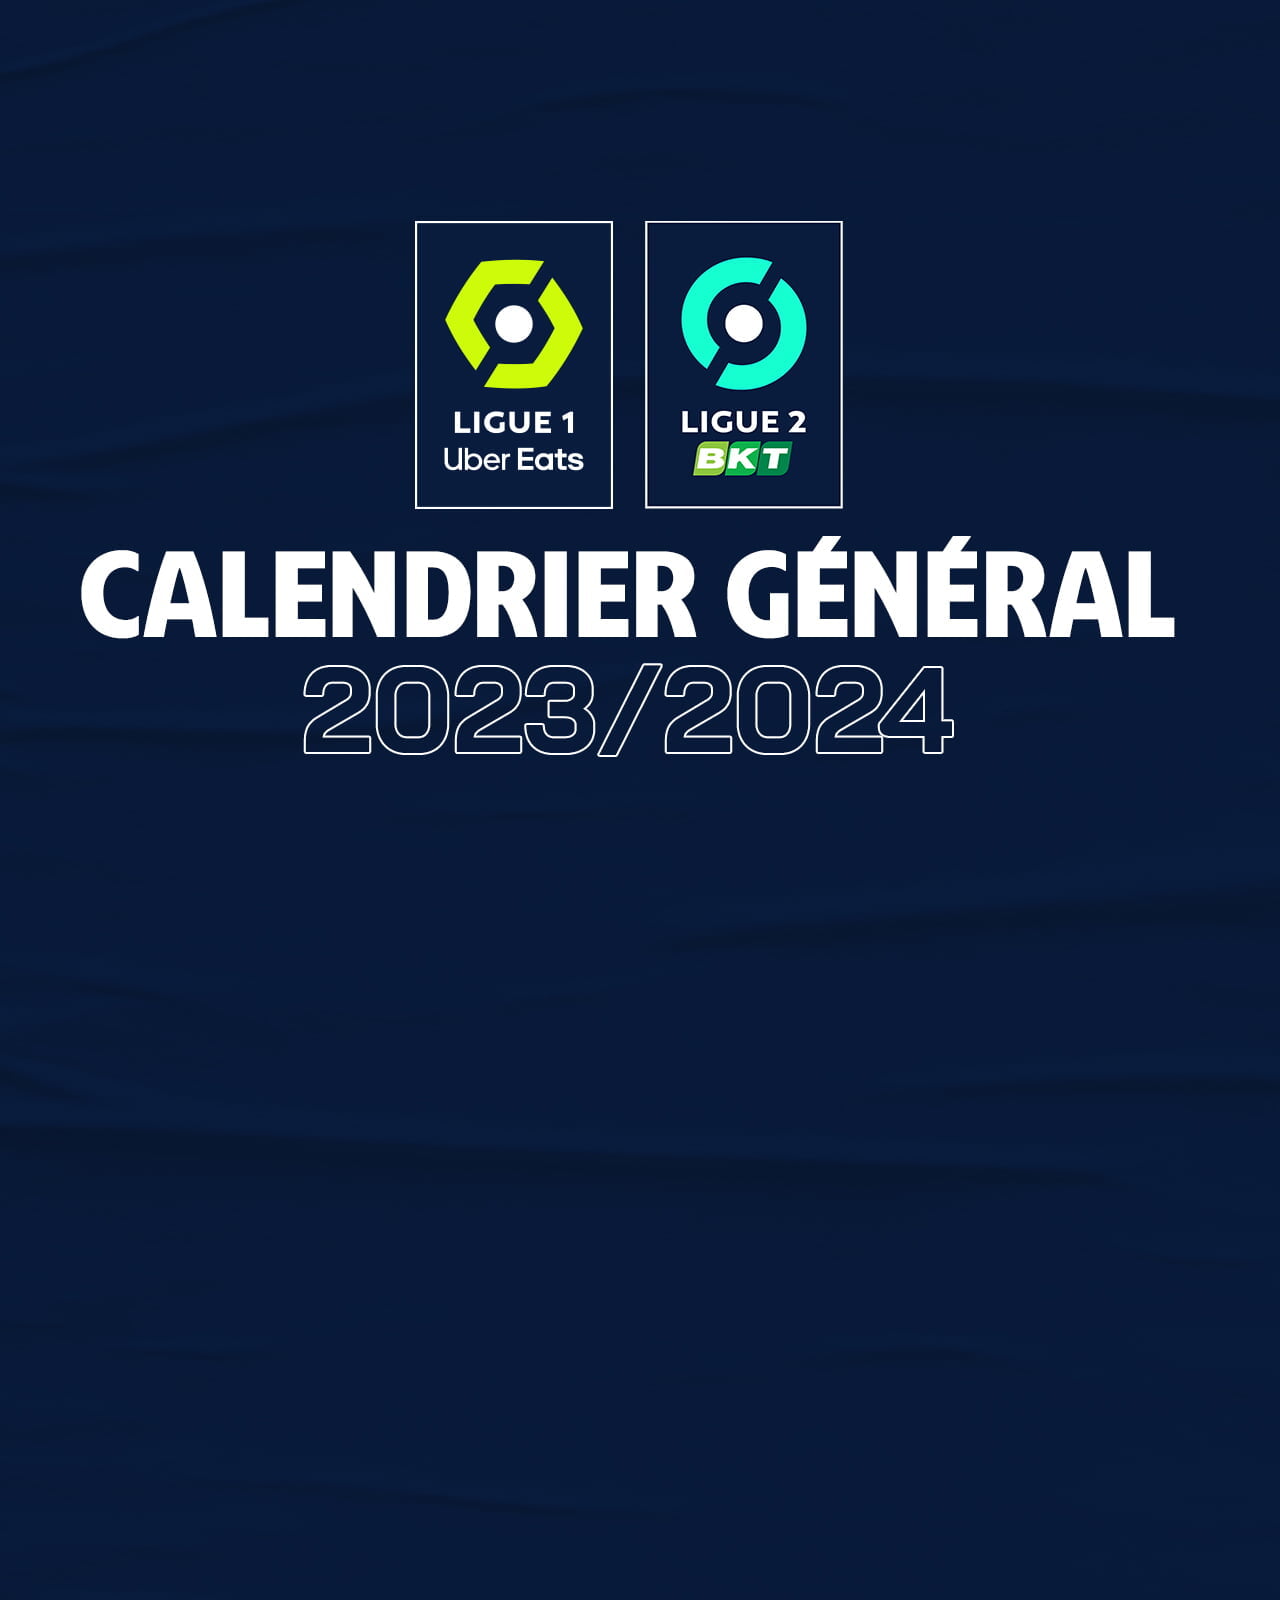 Bundesliga announces full 2023/24 schedule